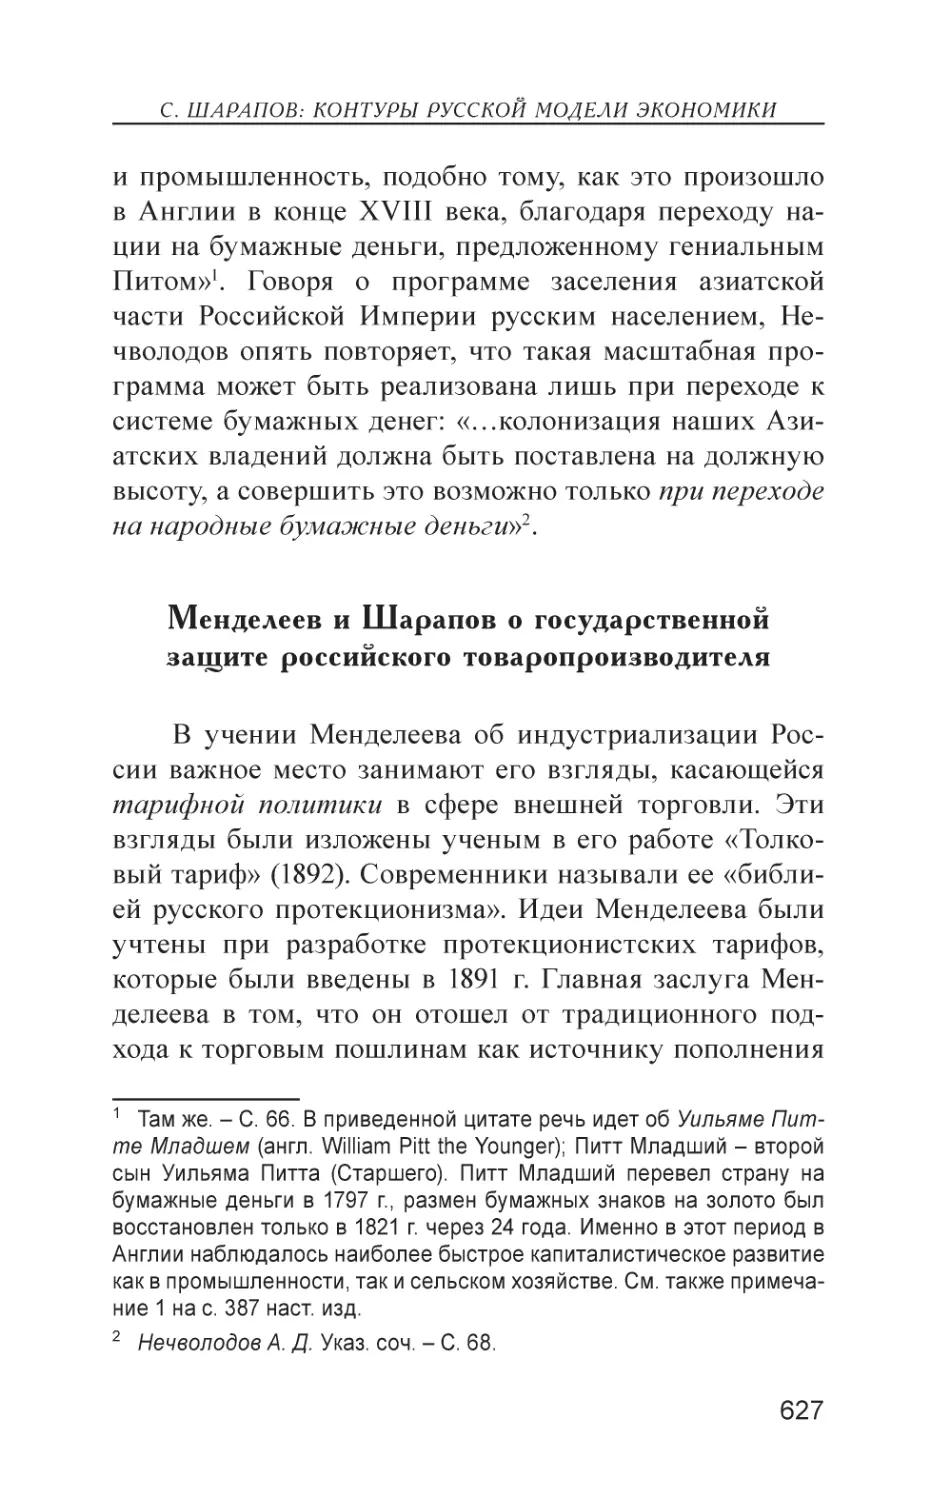 Менделеев и Шарапов о государственной защите российского товаропроизводителя